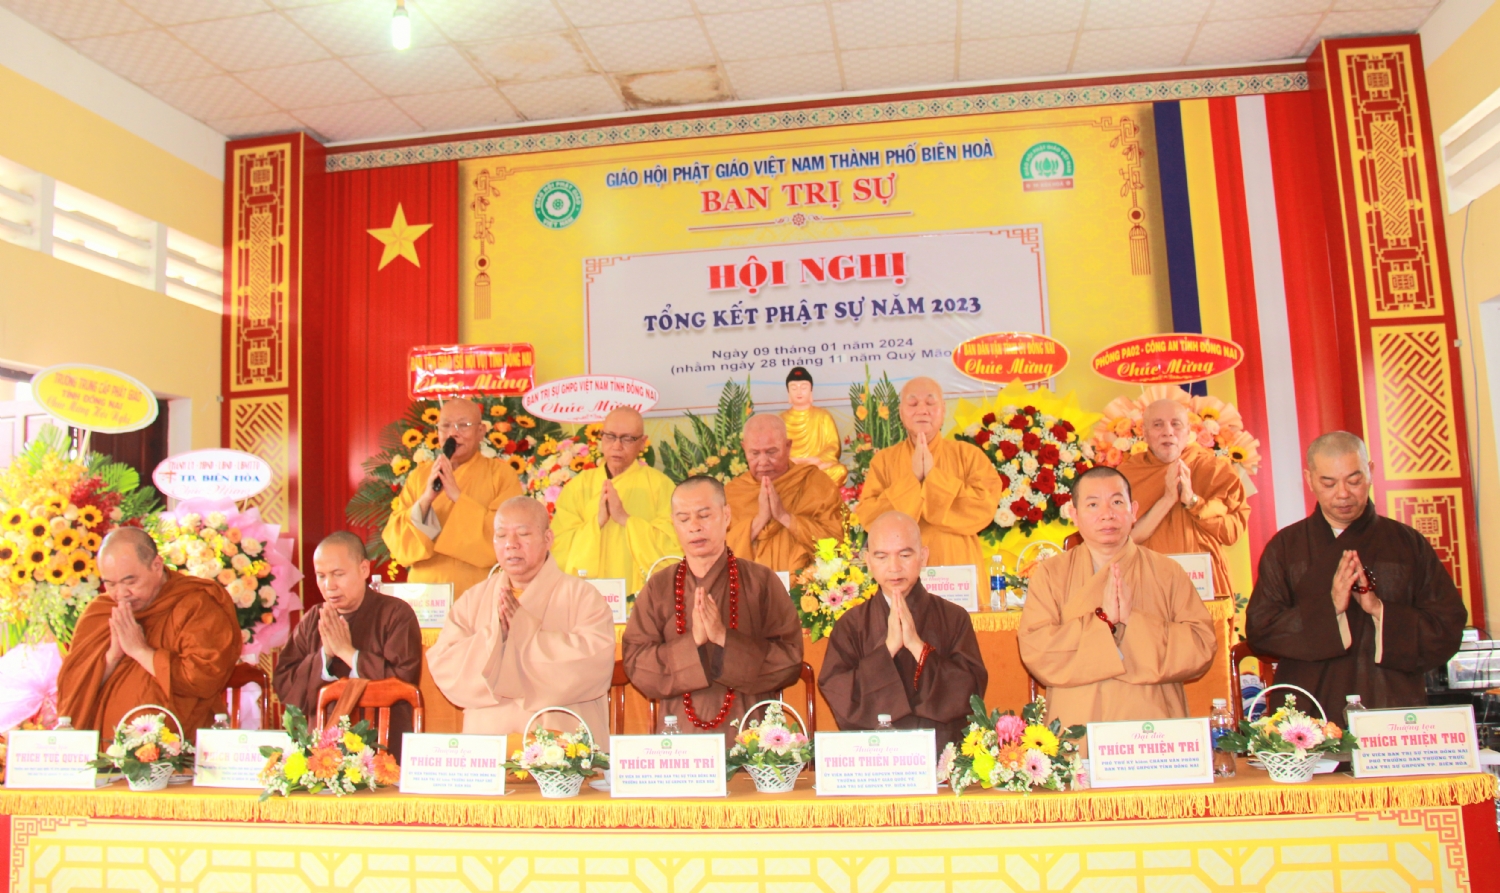 Biên Hòa: Trang nghiêm Hội nghị Tổng kết Phật sự năm 2023 của Ban Trị sự Tp. Biên Hòa